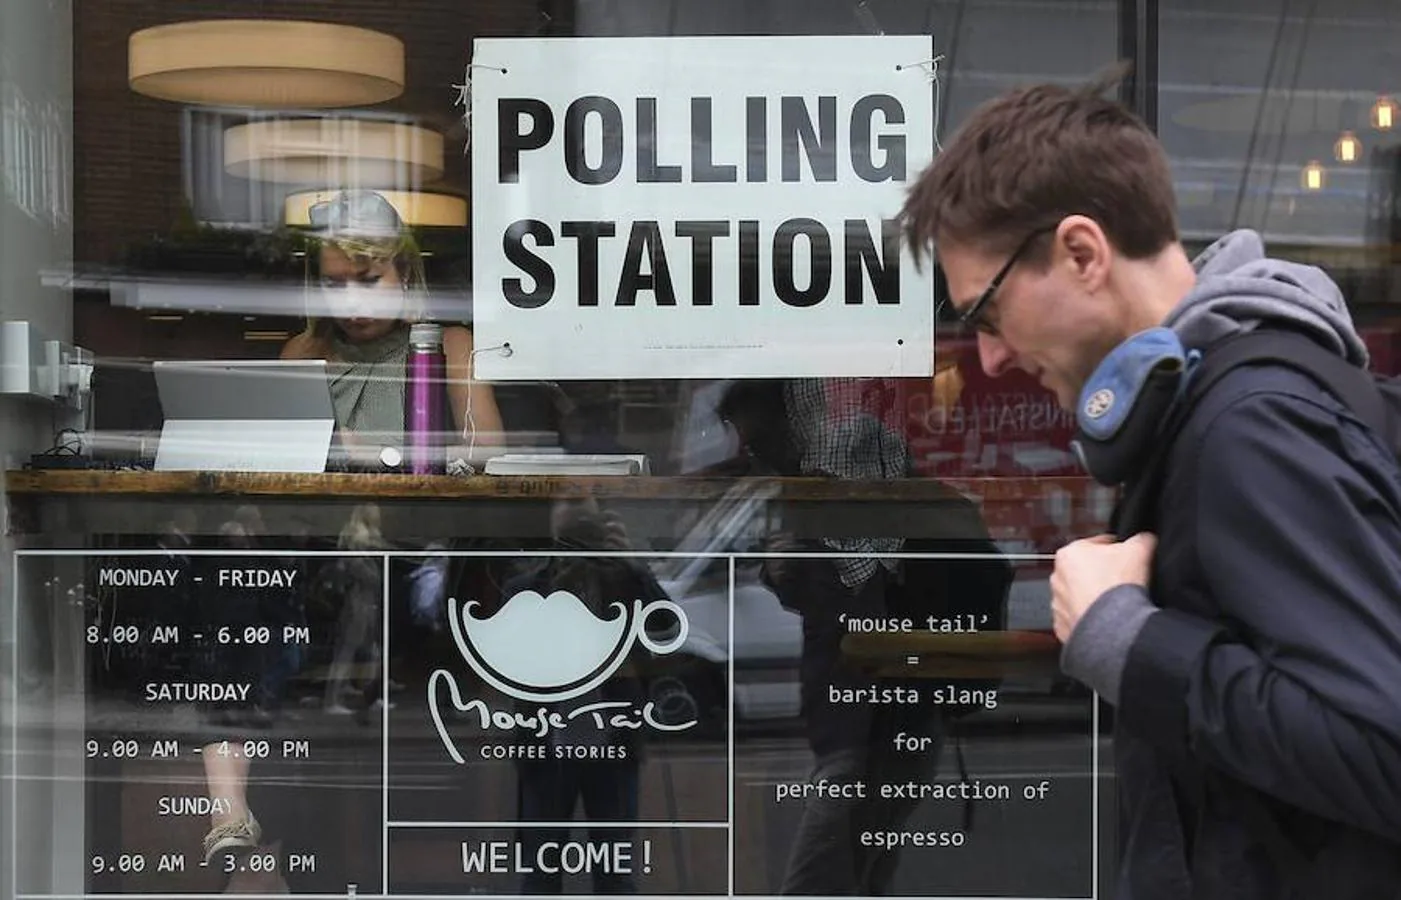 Colegio electoral en una cafetería. Un hombre camina junto a una cafetería habilitada como colegio electoral en Borough High Street, Londres.